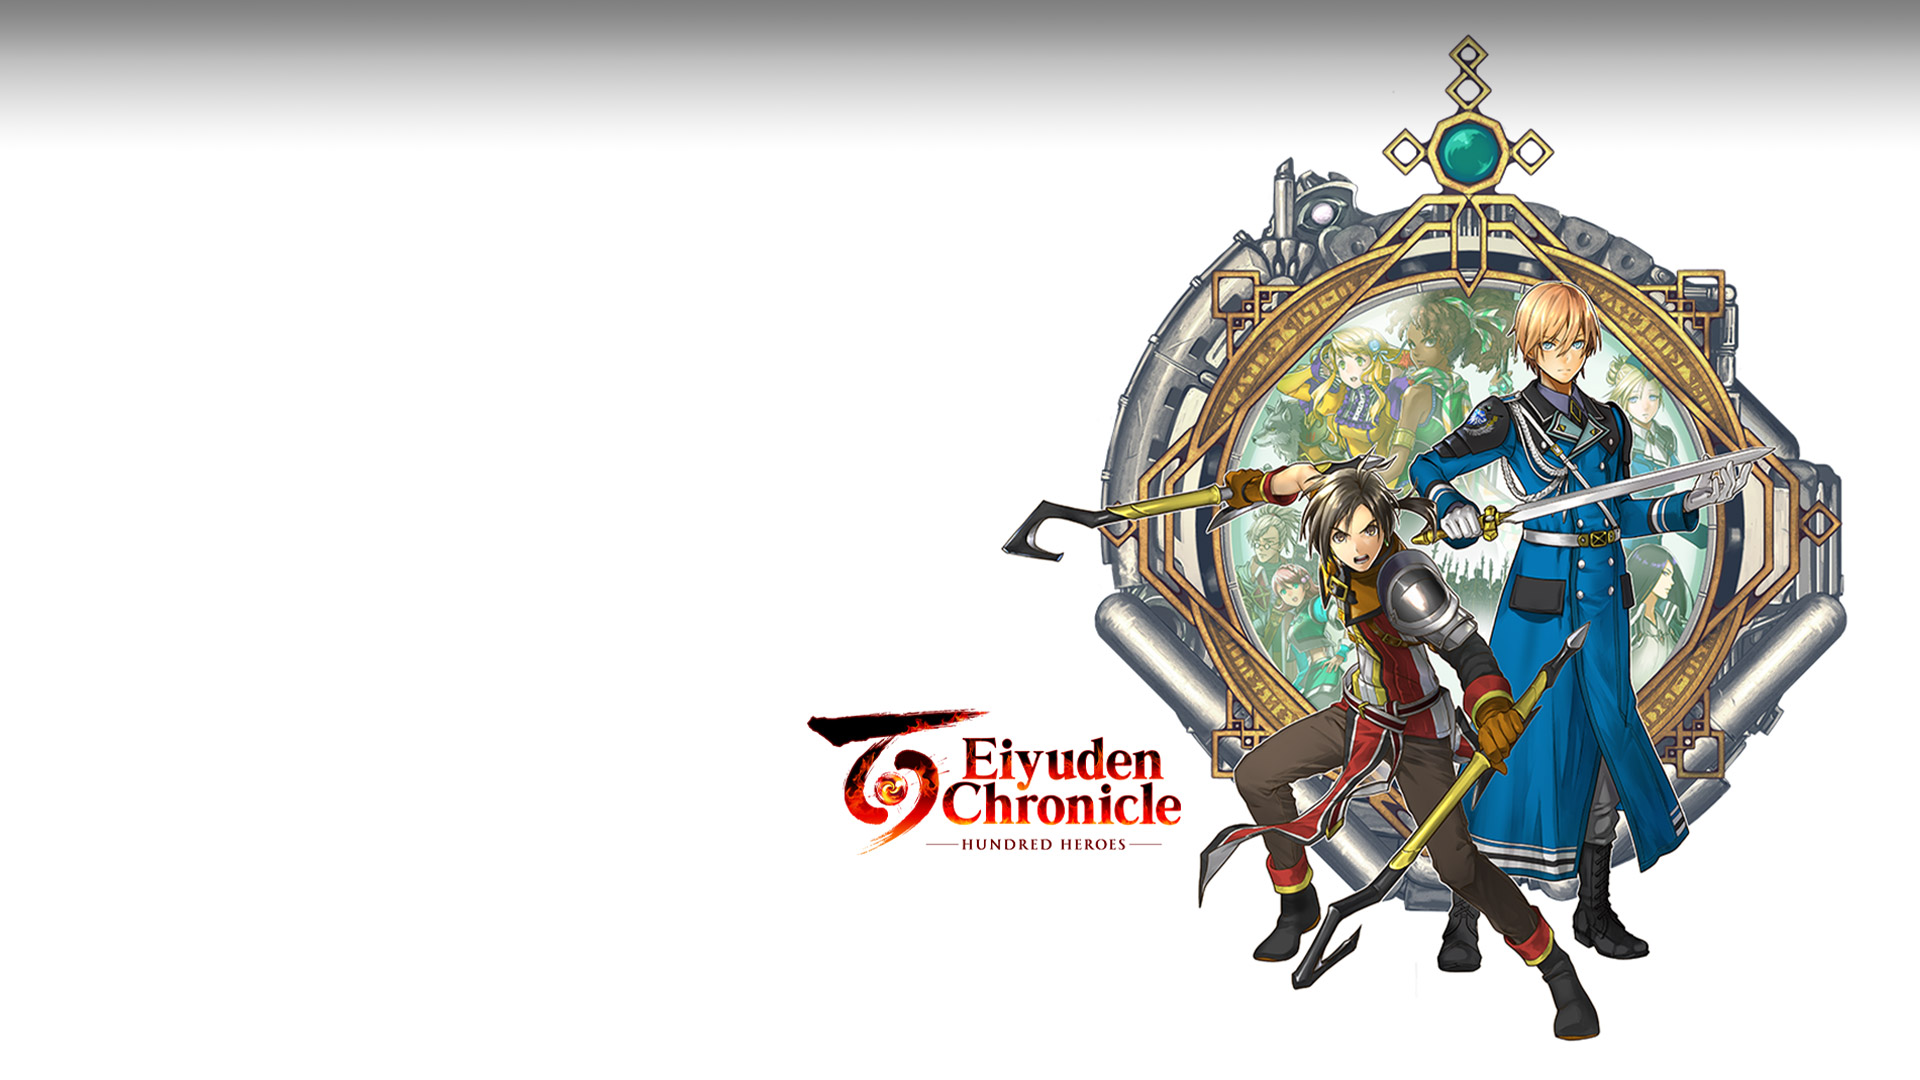 Eiyuden Chronicle: Hundred Heroes. Twee personages met wapens staan voor een amuletachtige achtergrond met andere personages in het midden.